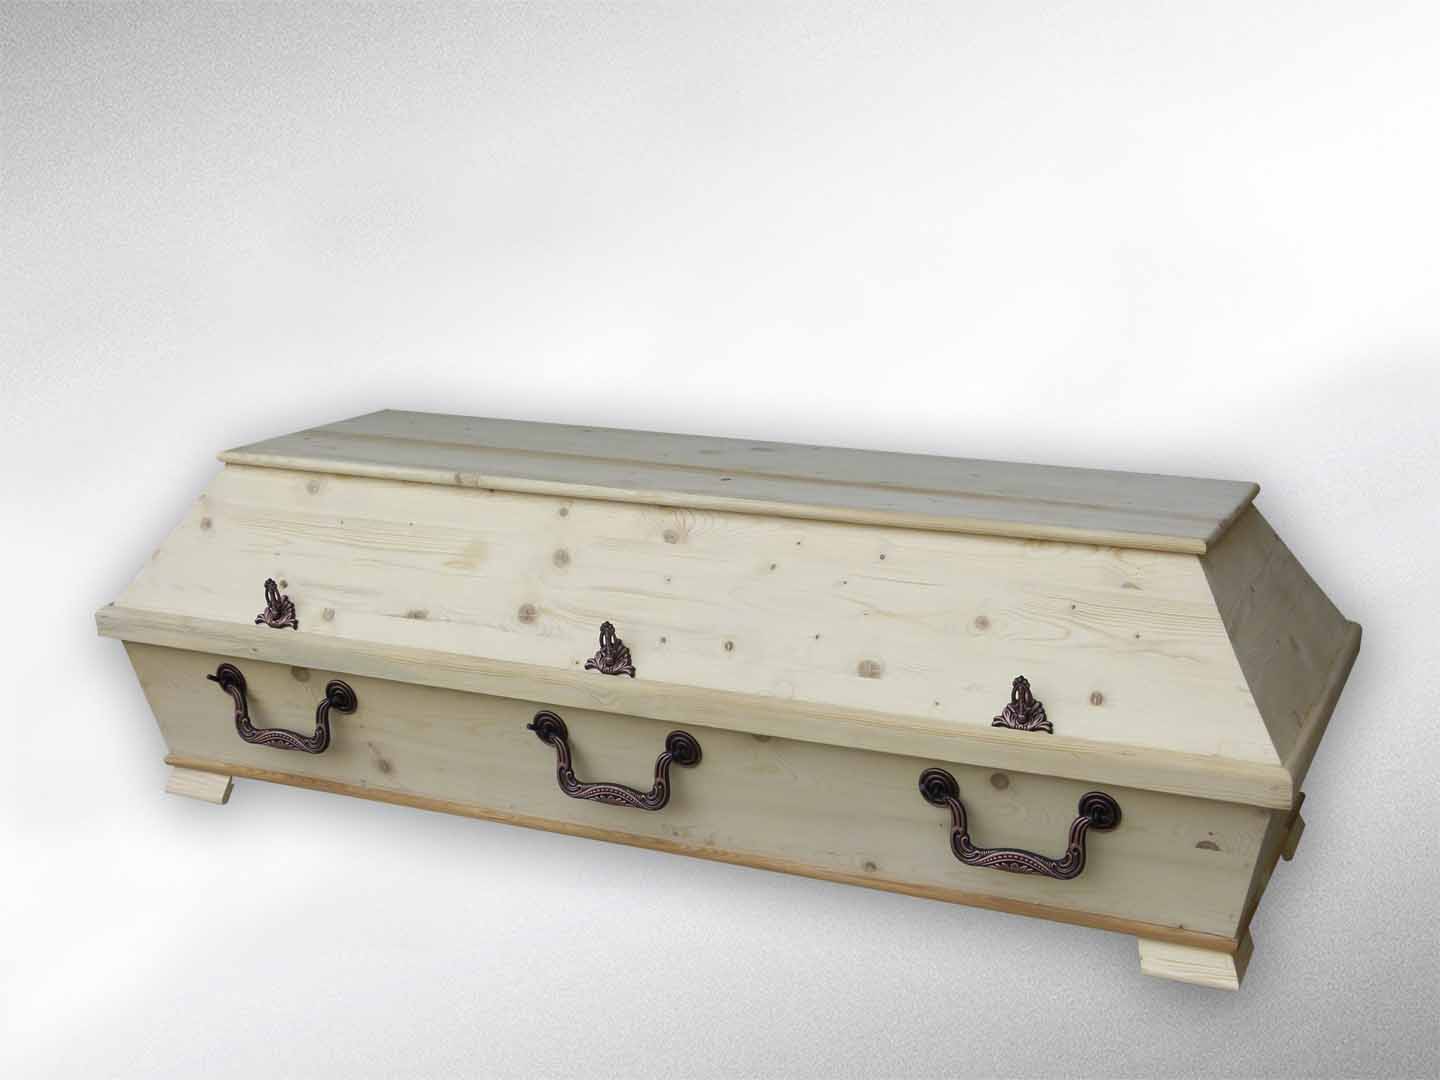 Kremationssarg, XXL, 78 cm Farbe: roh, nicht lackiert, astig „Deckel glatt“, erhöhtes Unterteil